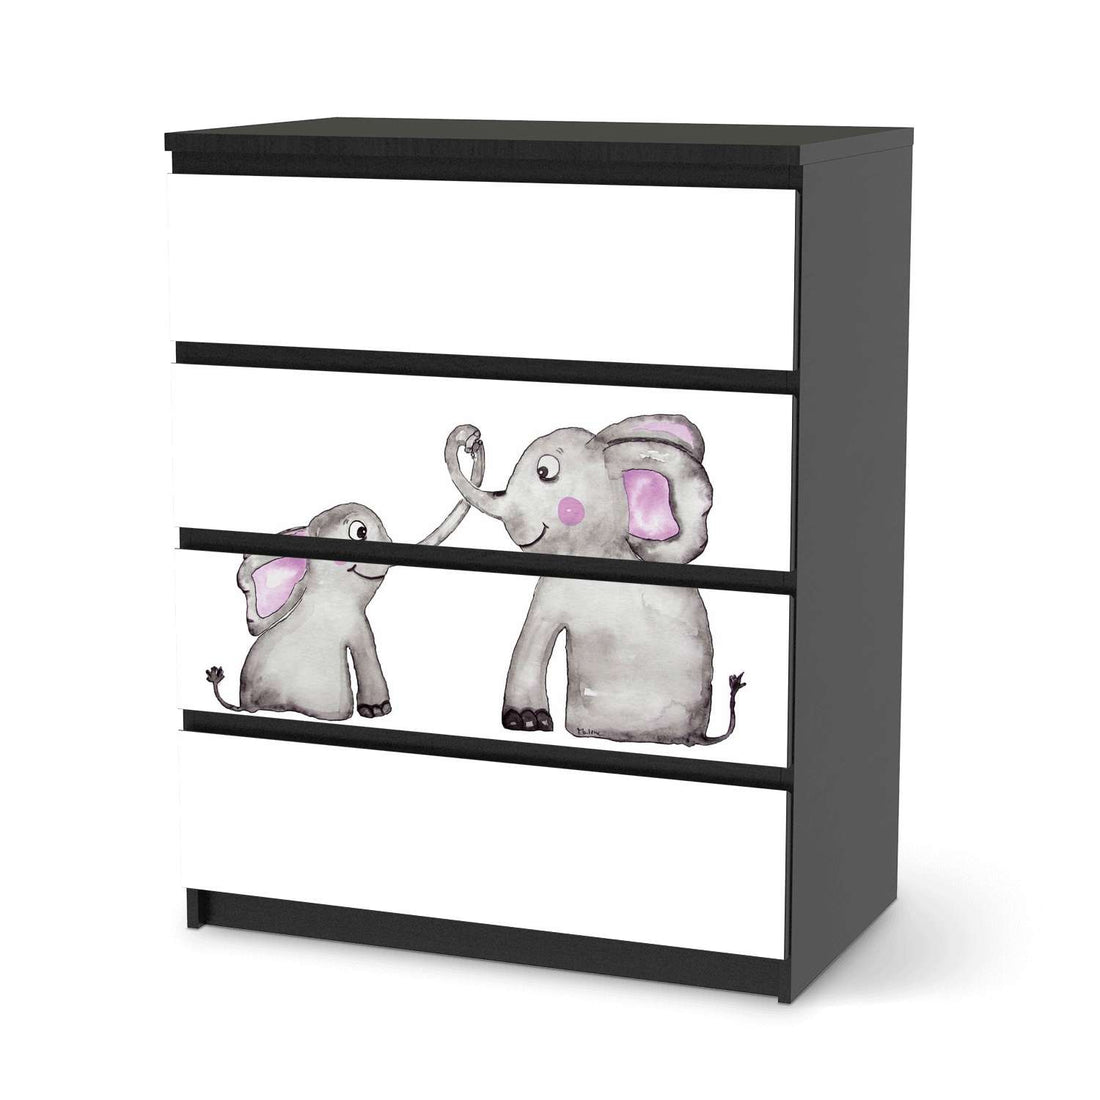 Folie für Möbel Elefanten - IKEA Malm Kommode 4 Schubladen - schwarz